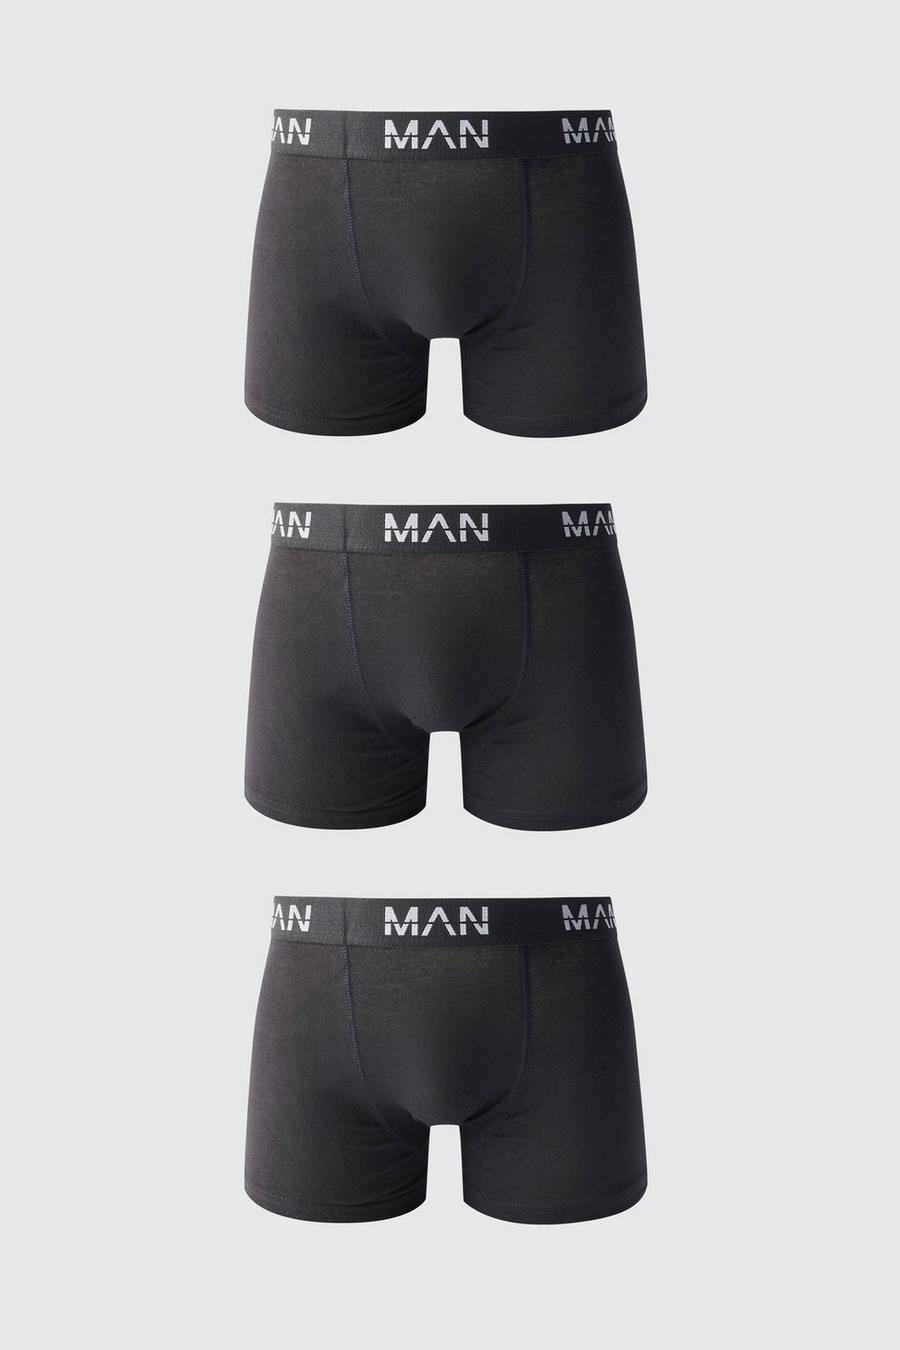 3er-Pack mittellange Man-Dash Boxershorts, Black